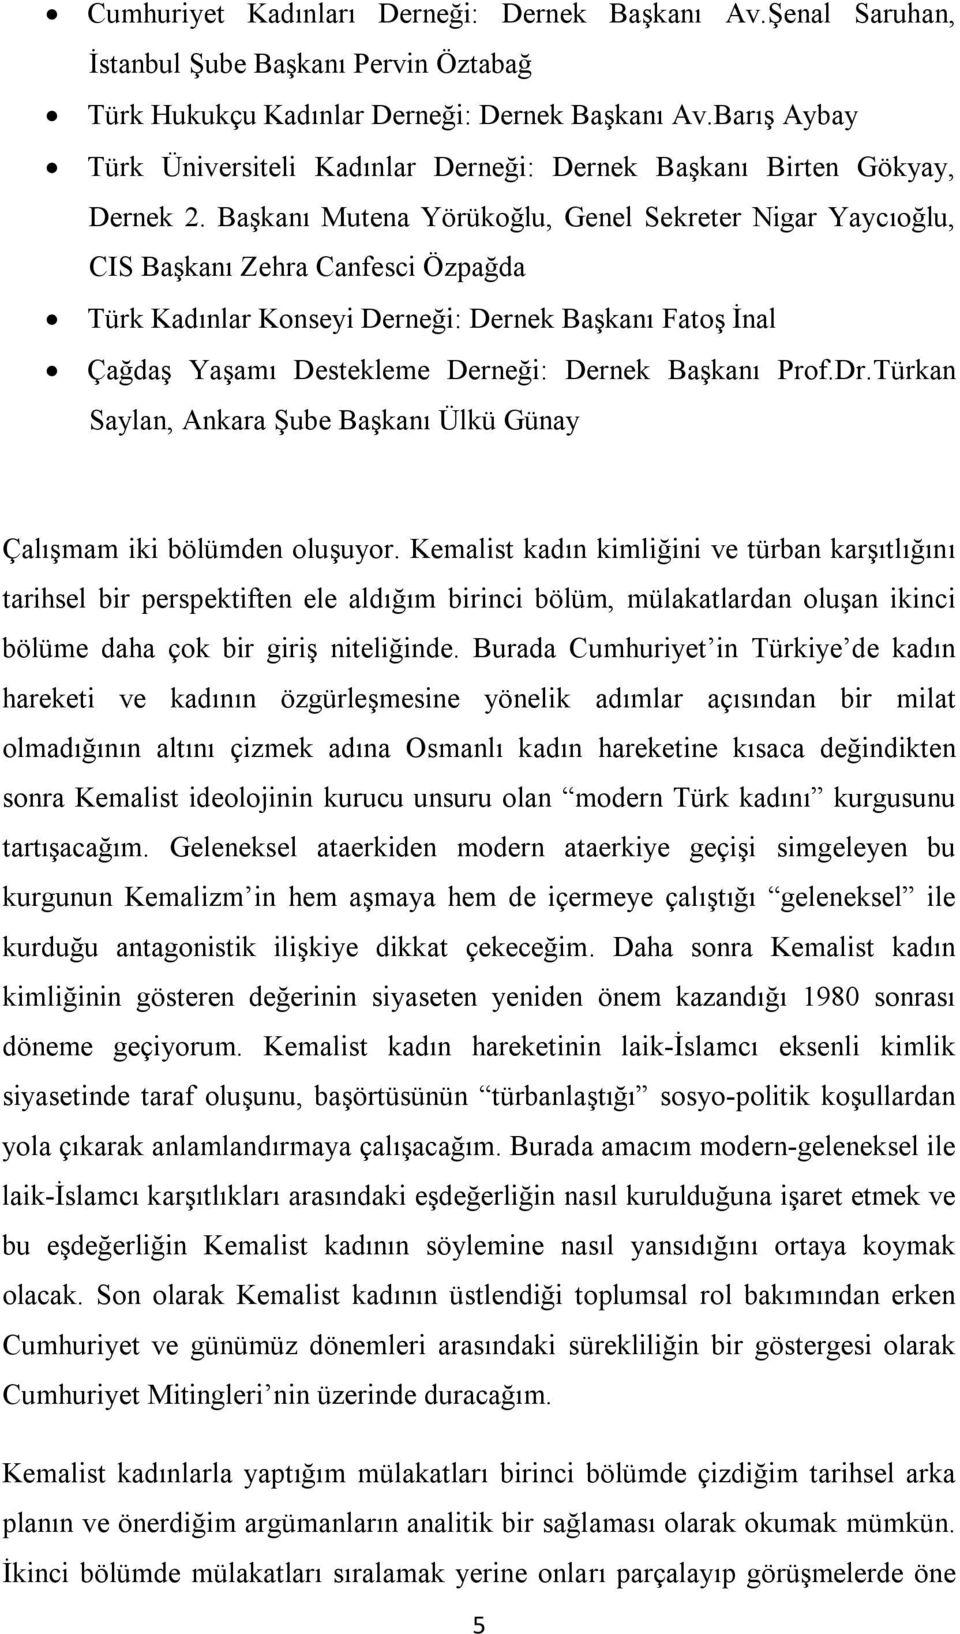 Başkanı Mutena Yörükoğlu, Genel Sekreter Nigar Yaycıoğlu, CIS Başkanı Zehra Canfesci Özpağda Türk Kadınlar Konseyi Derneği: Dernek Başkanı Fatoş İnal Çağdaş Yaşamı Destekleme Derneği: Dernek Başkanı